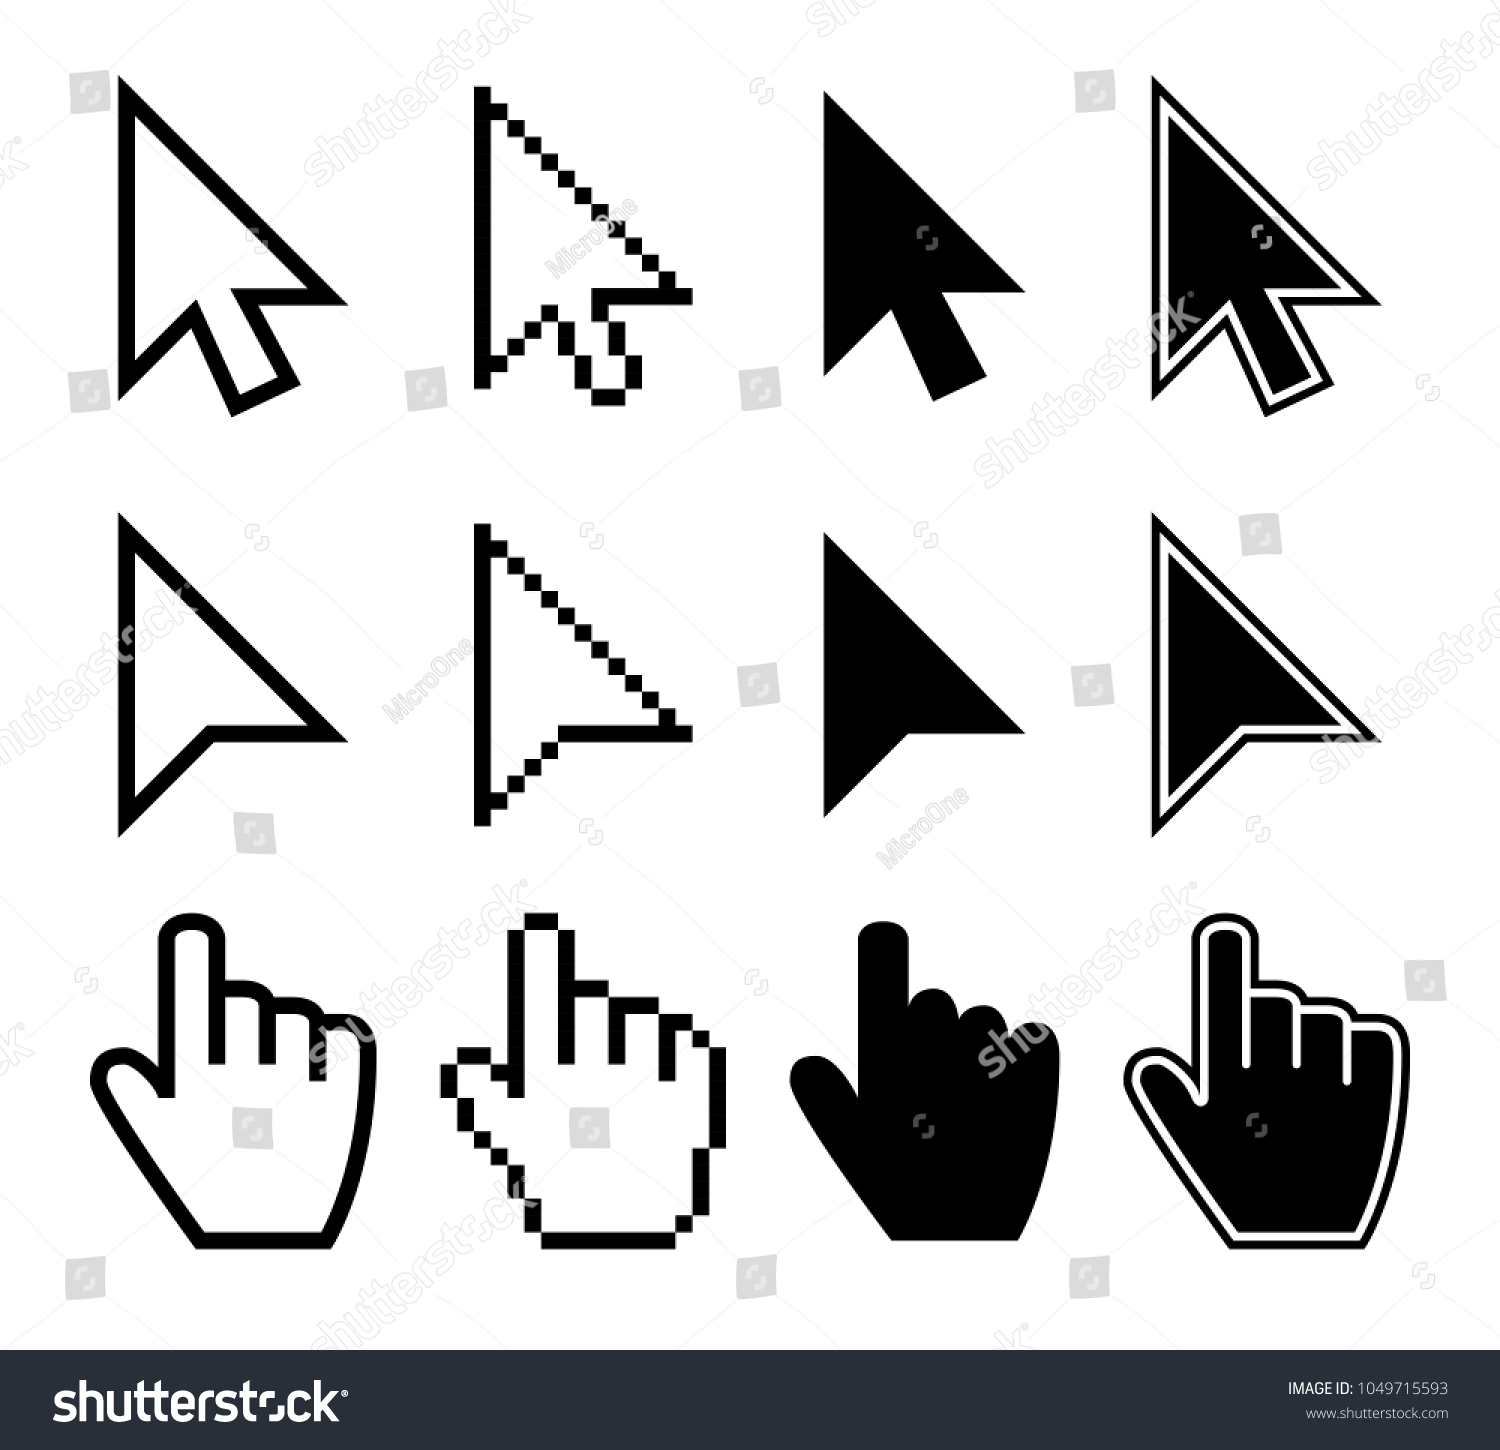 マウス カーソルをクリックすると コンピュータの指ポインタ ベクター画像セットが表示されます マウスポインターの指 カーソルの矢印の手のイラスト のベクター画像素材 ロイヤリティフリー